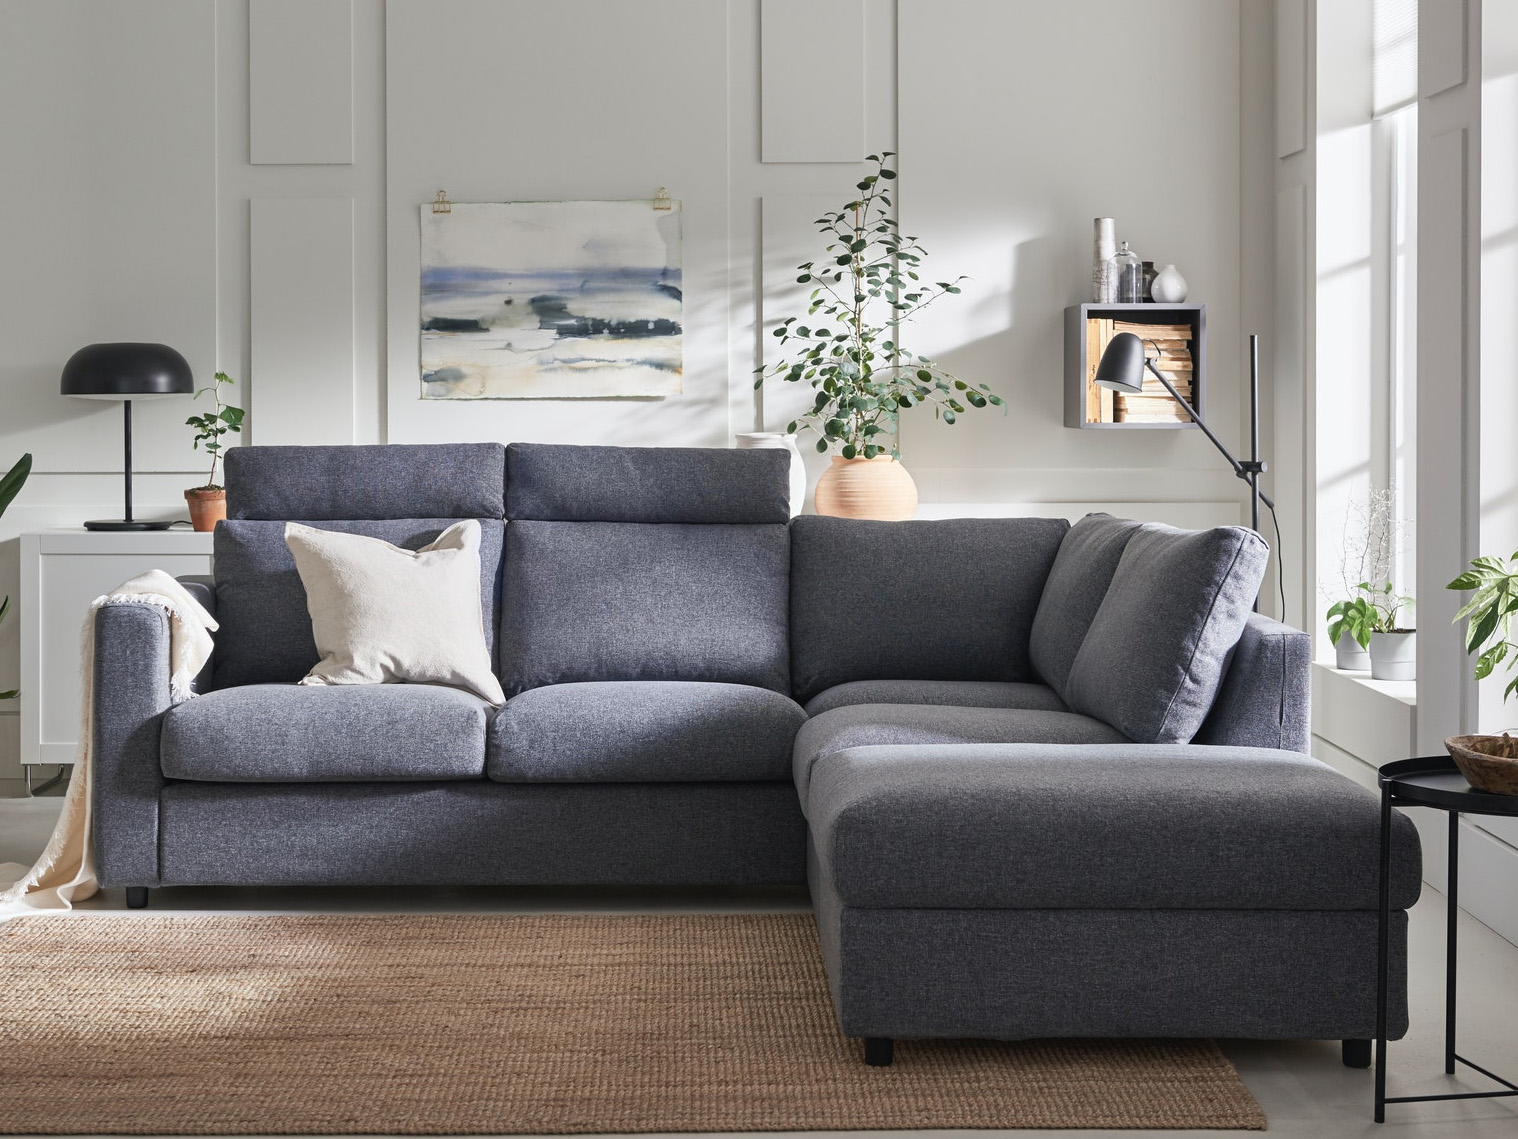  Sofas   IKEA  Sofa  designed for comfort